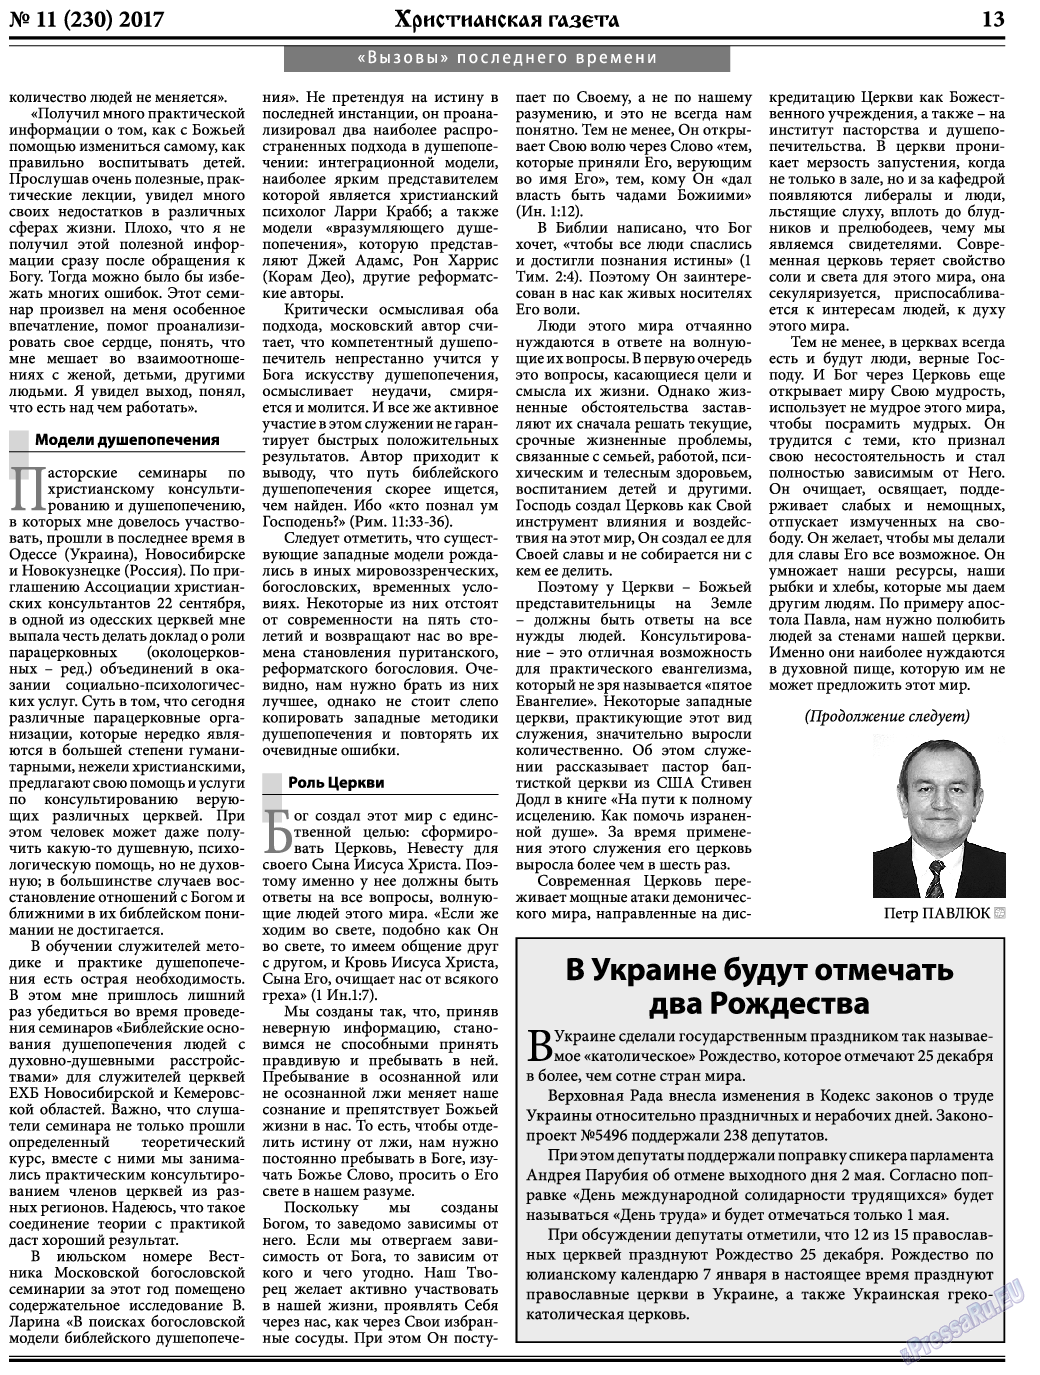 Христианская газета, газета. 2017 №11 стр.13